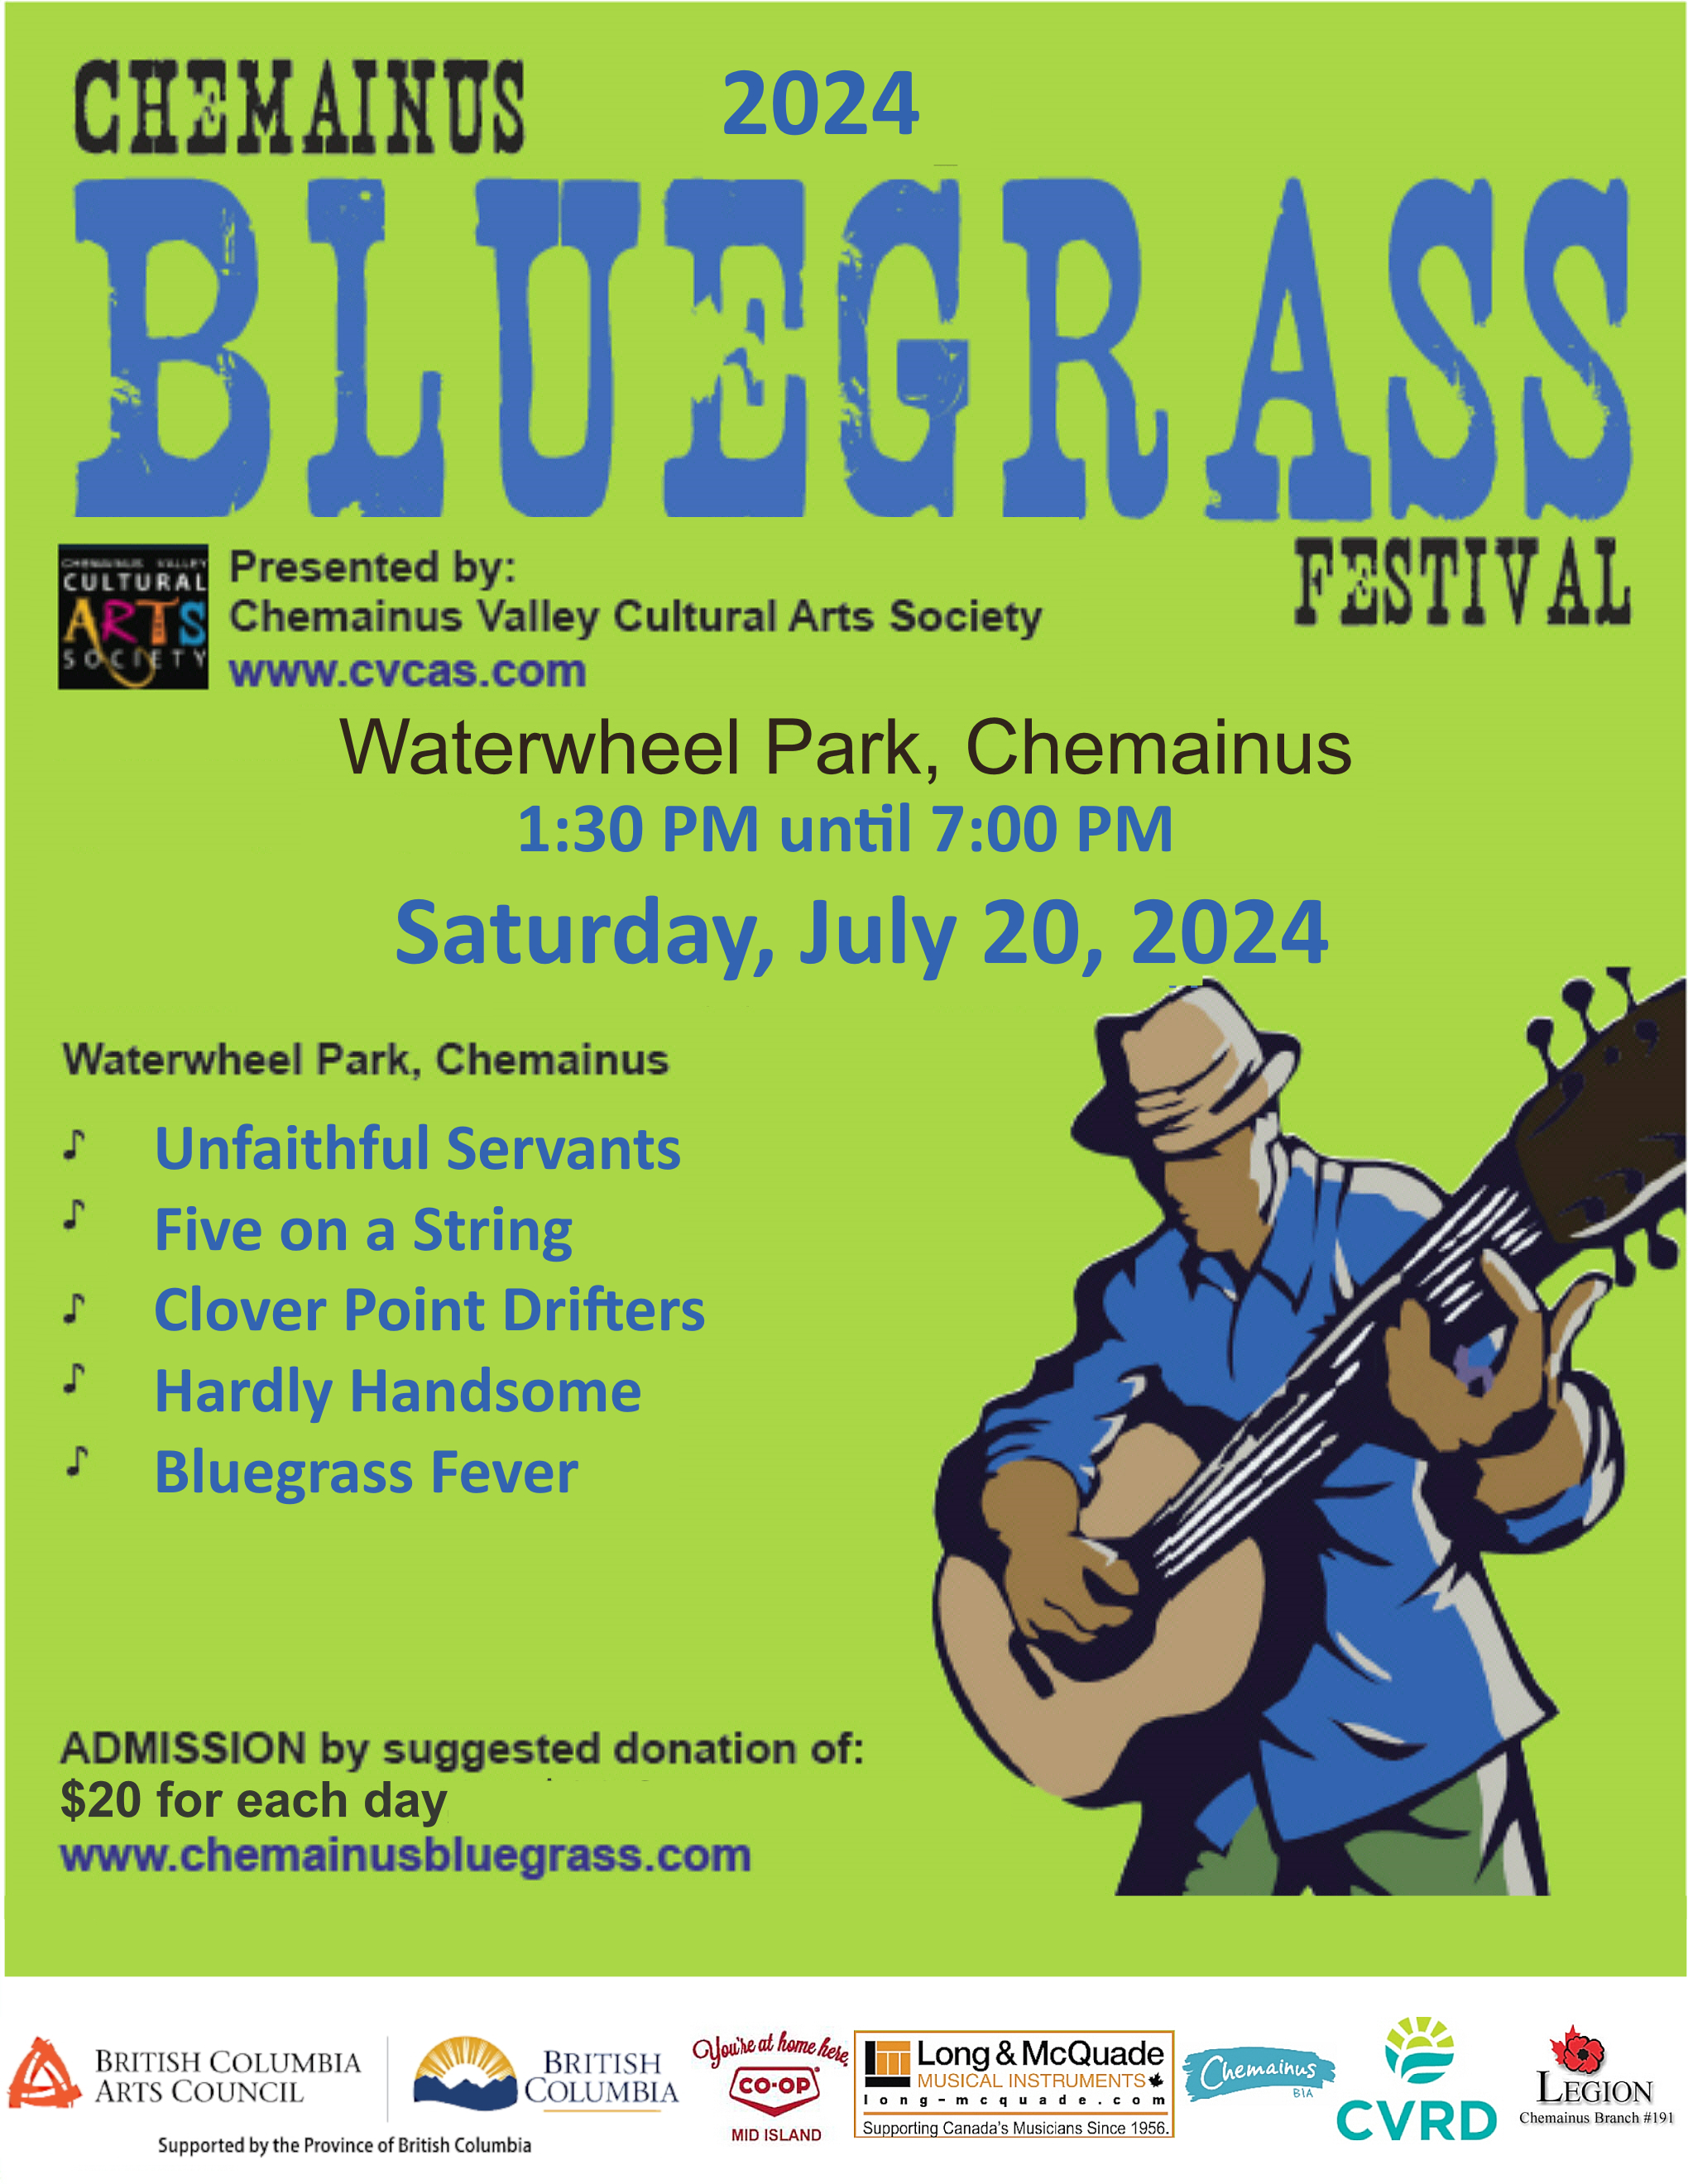 Chemainus Bluegrass Festival